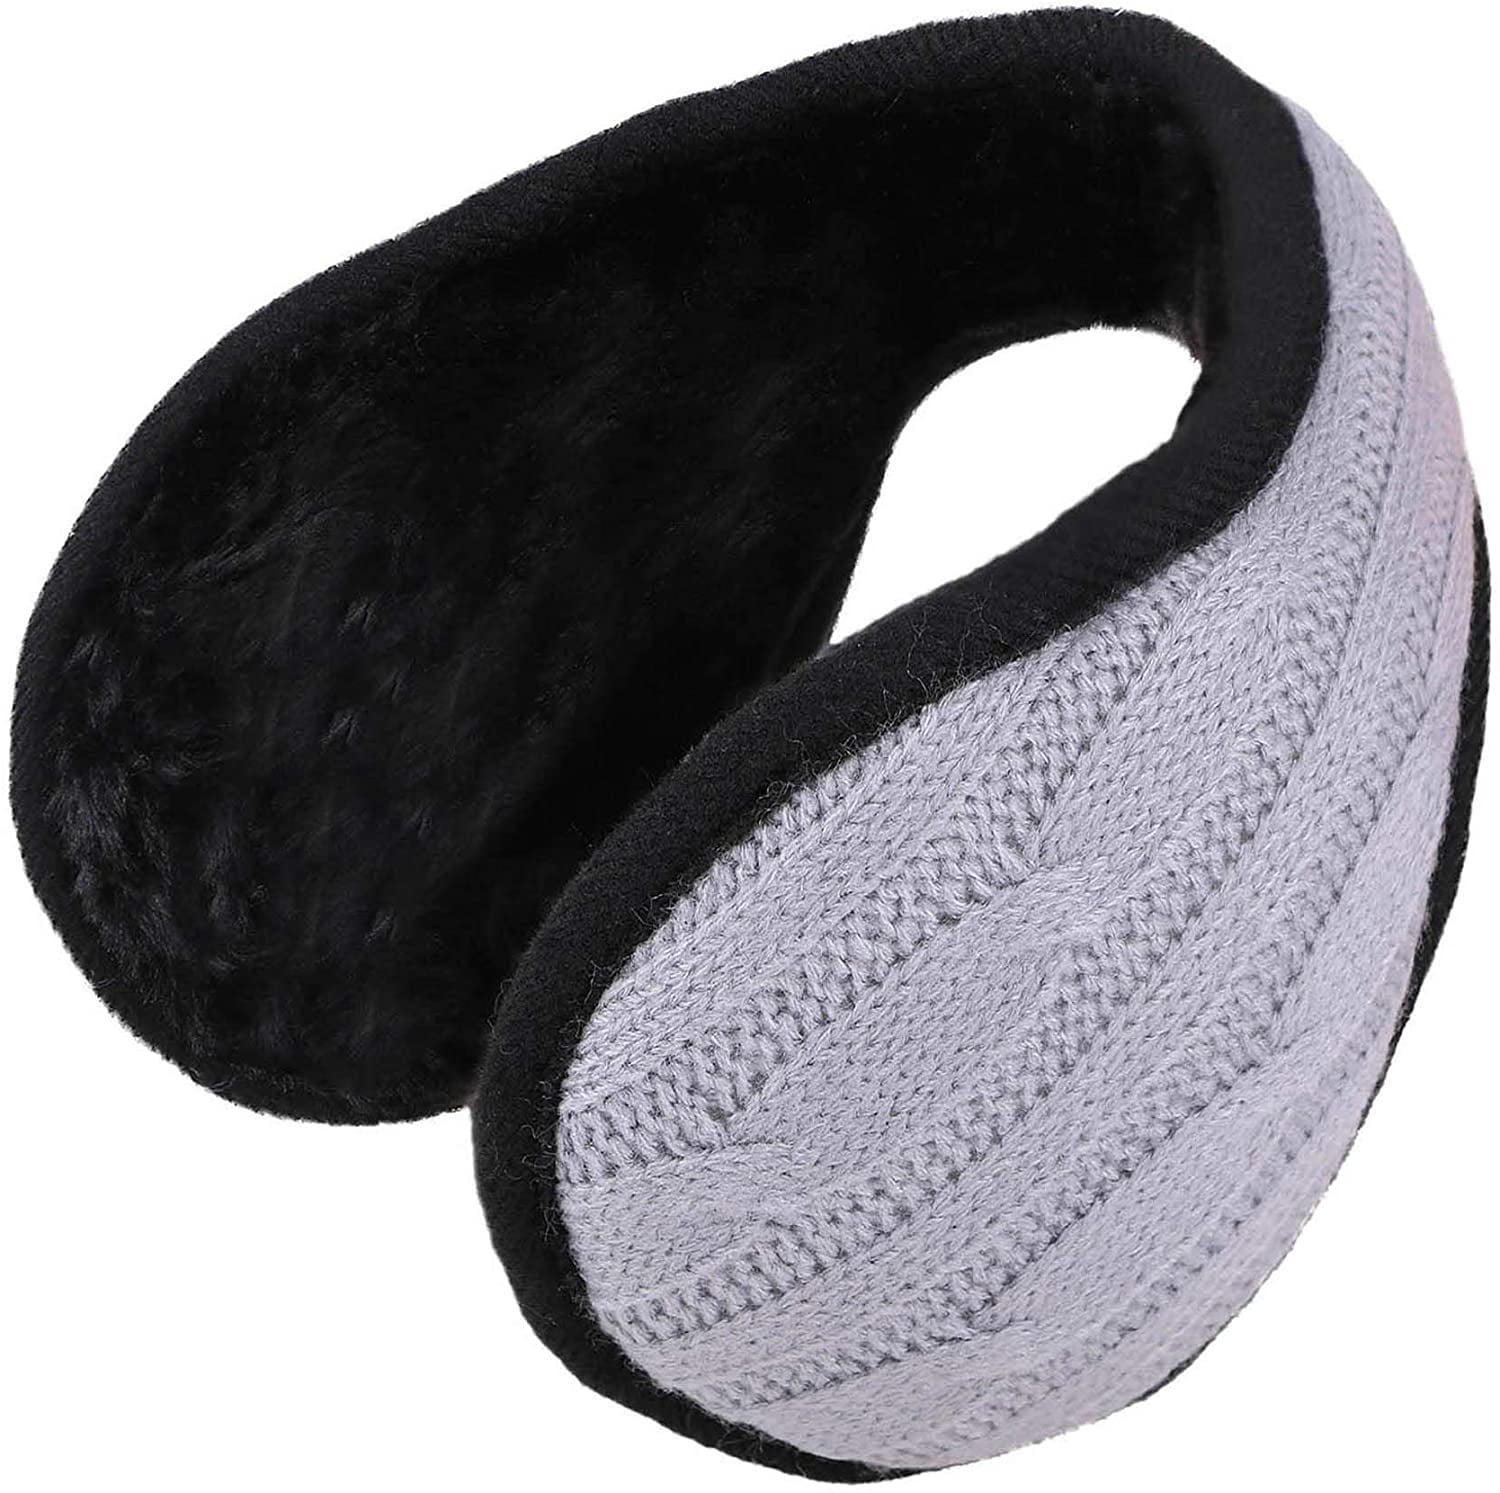 Details about   Ear Warmer Winter Head Band Polar Fleece Ski Ear Muff Unisex Stretch Spandex Hat